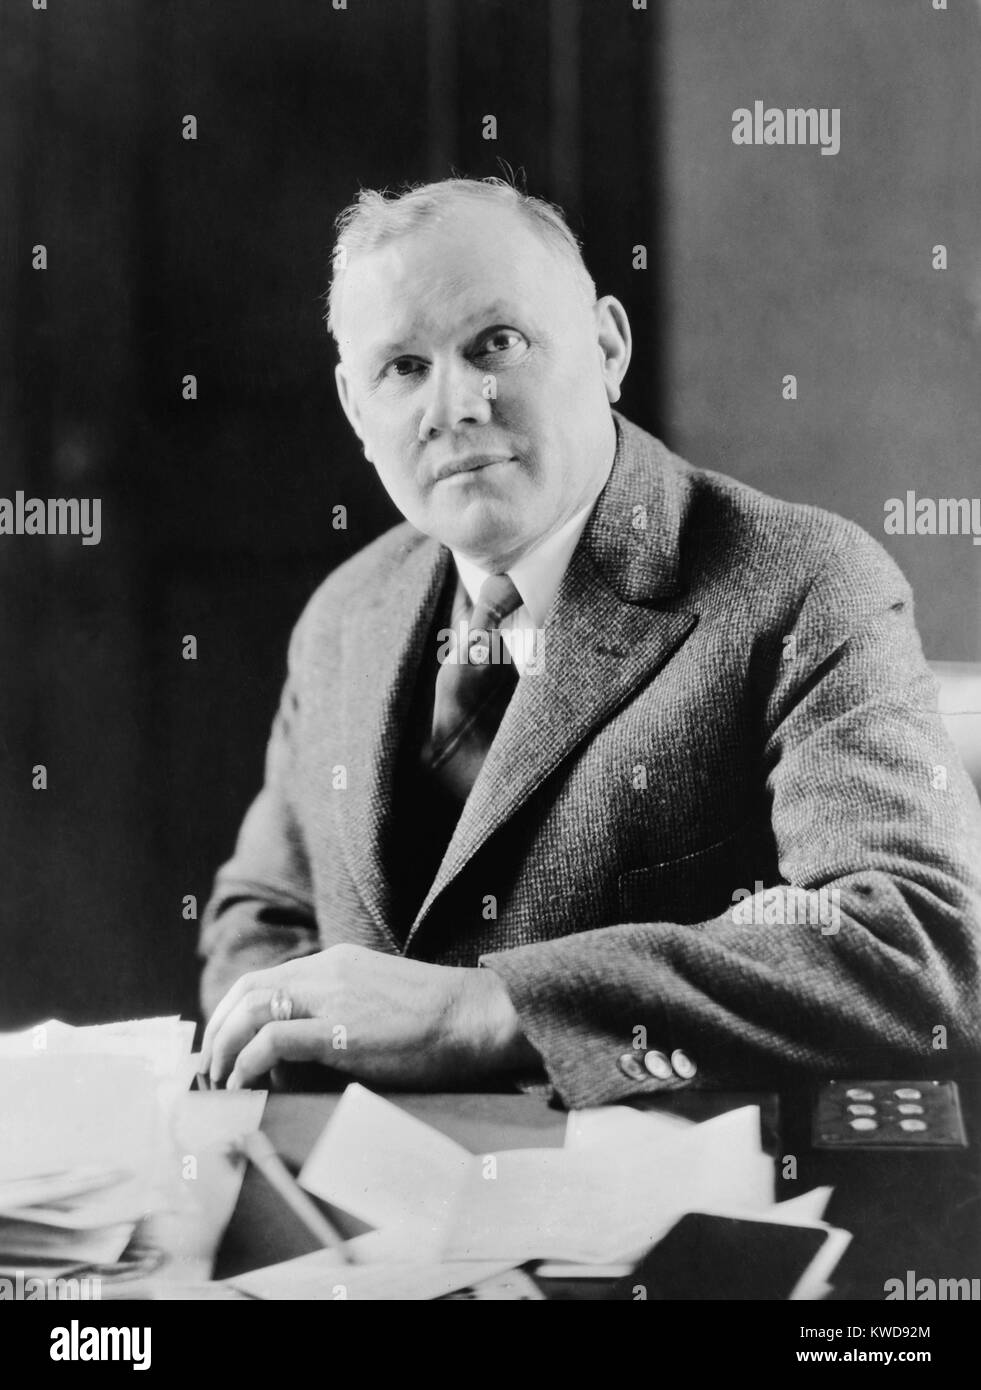 William Green dans son bureau à la Fédération américaine du travail siège, Jan 29, 1929. Washington, D.C. (BSLOC 2016 8 47) Banque D'Images